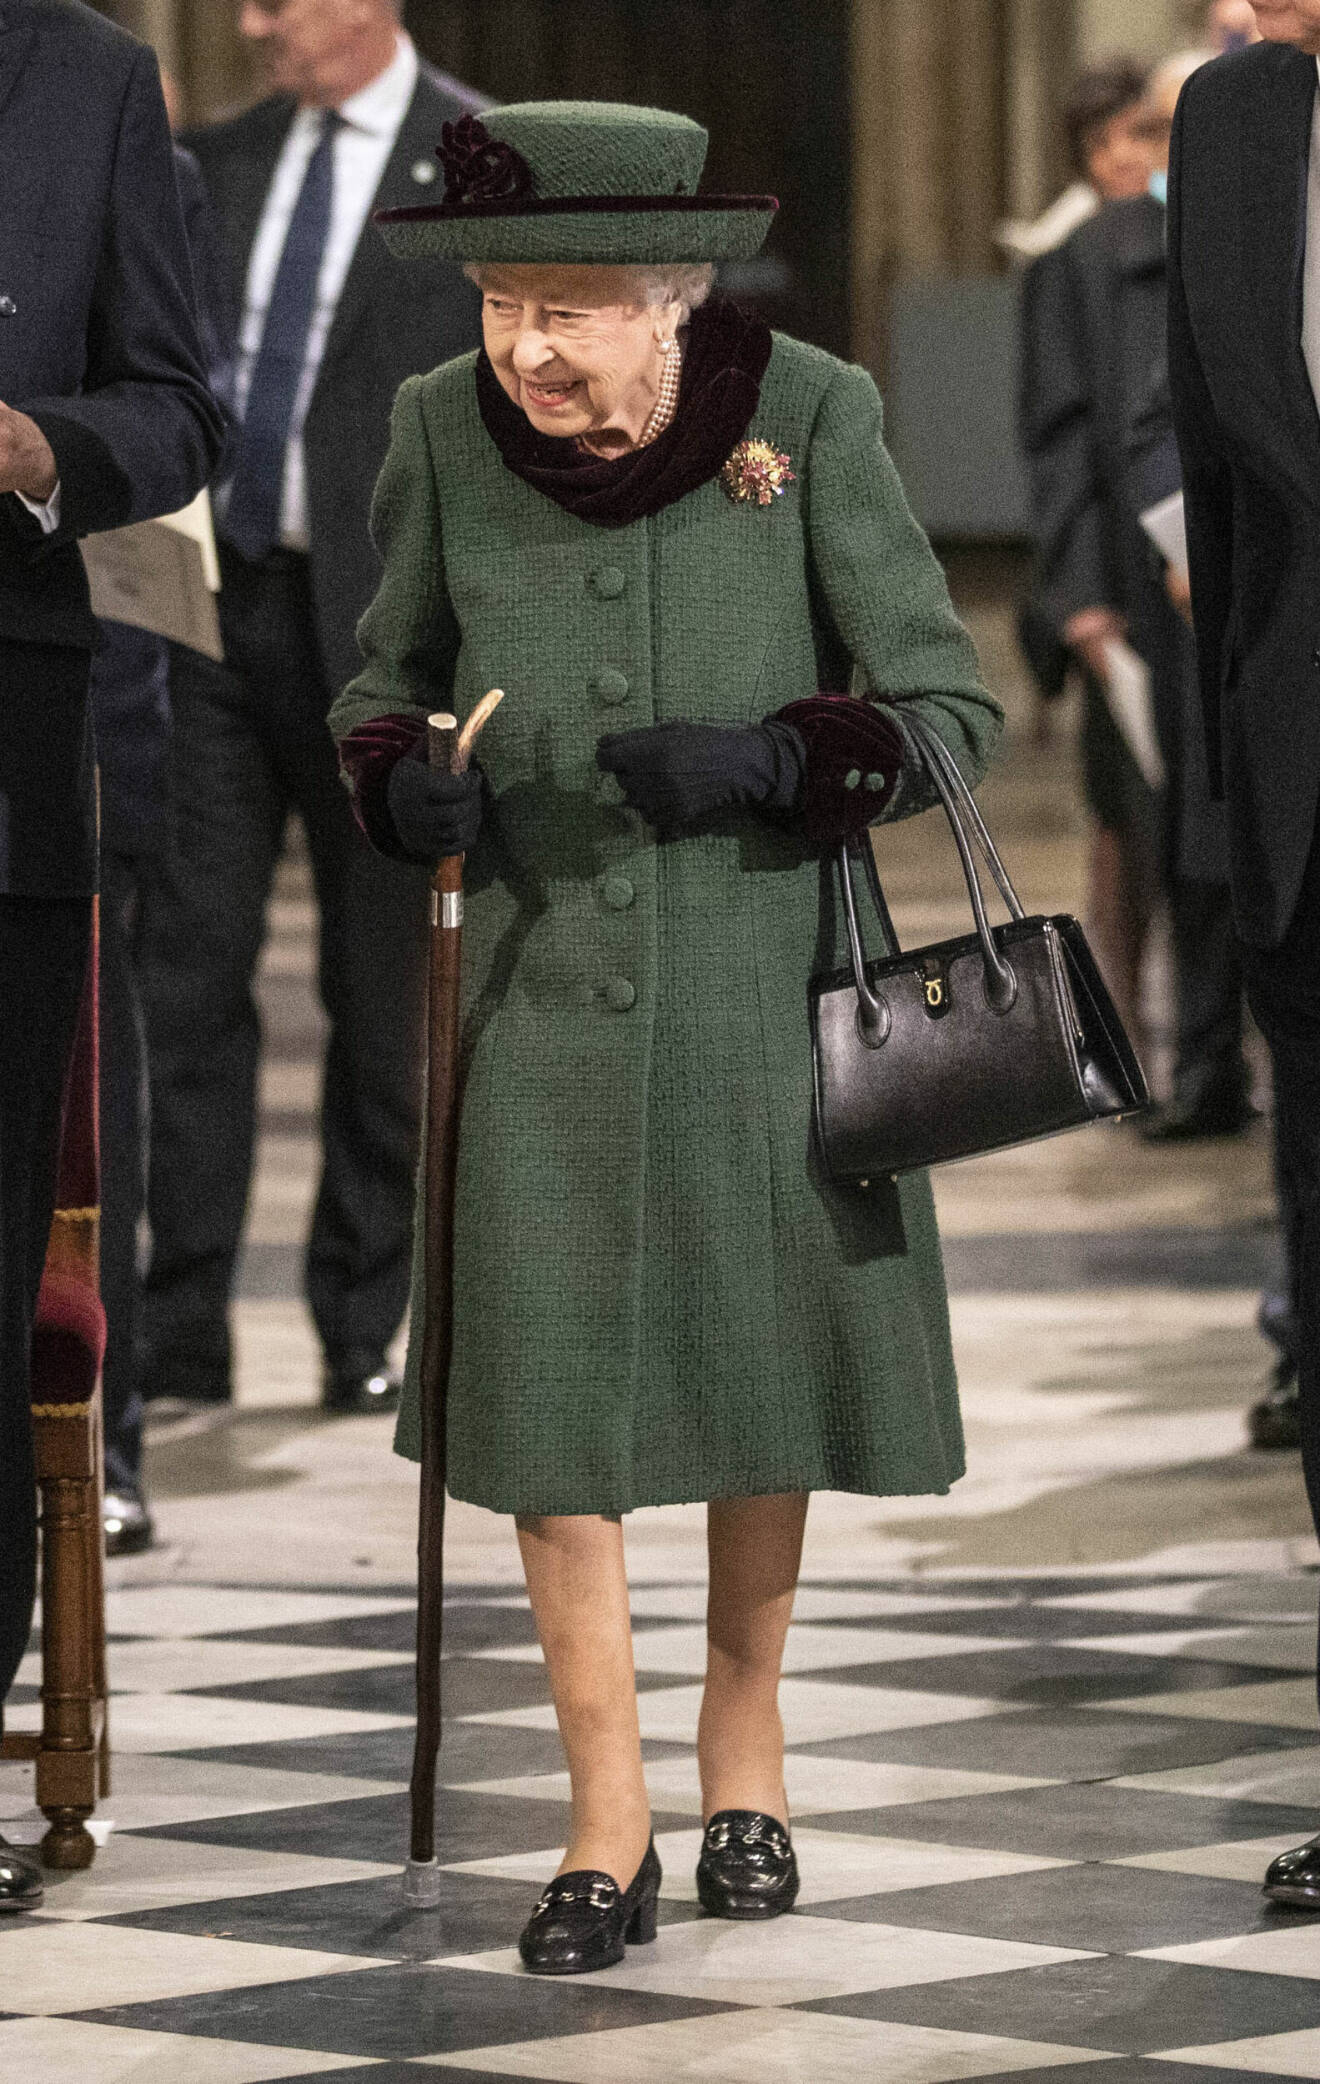 Drottning Elizabeth i grön kappa och hatt vid prins Philips minnesceremoni.